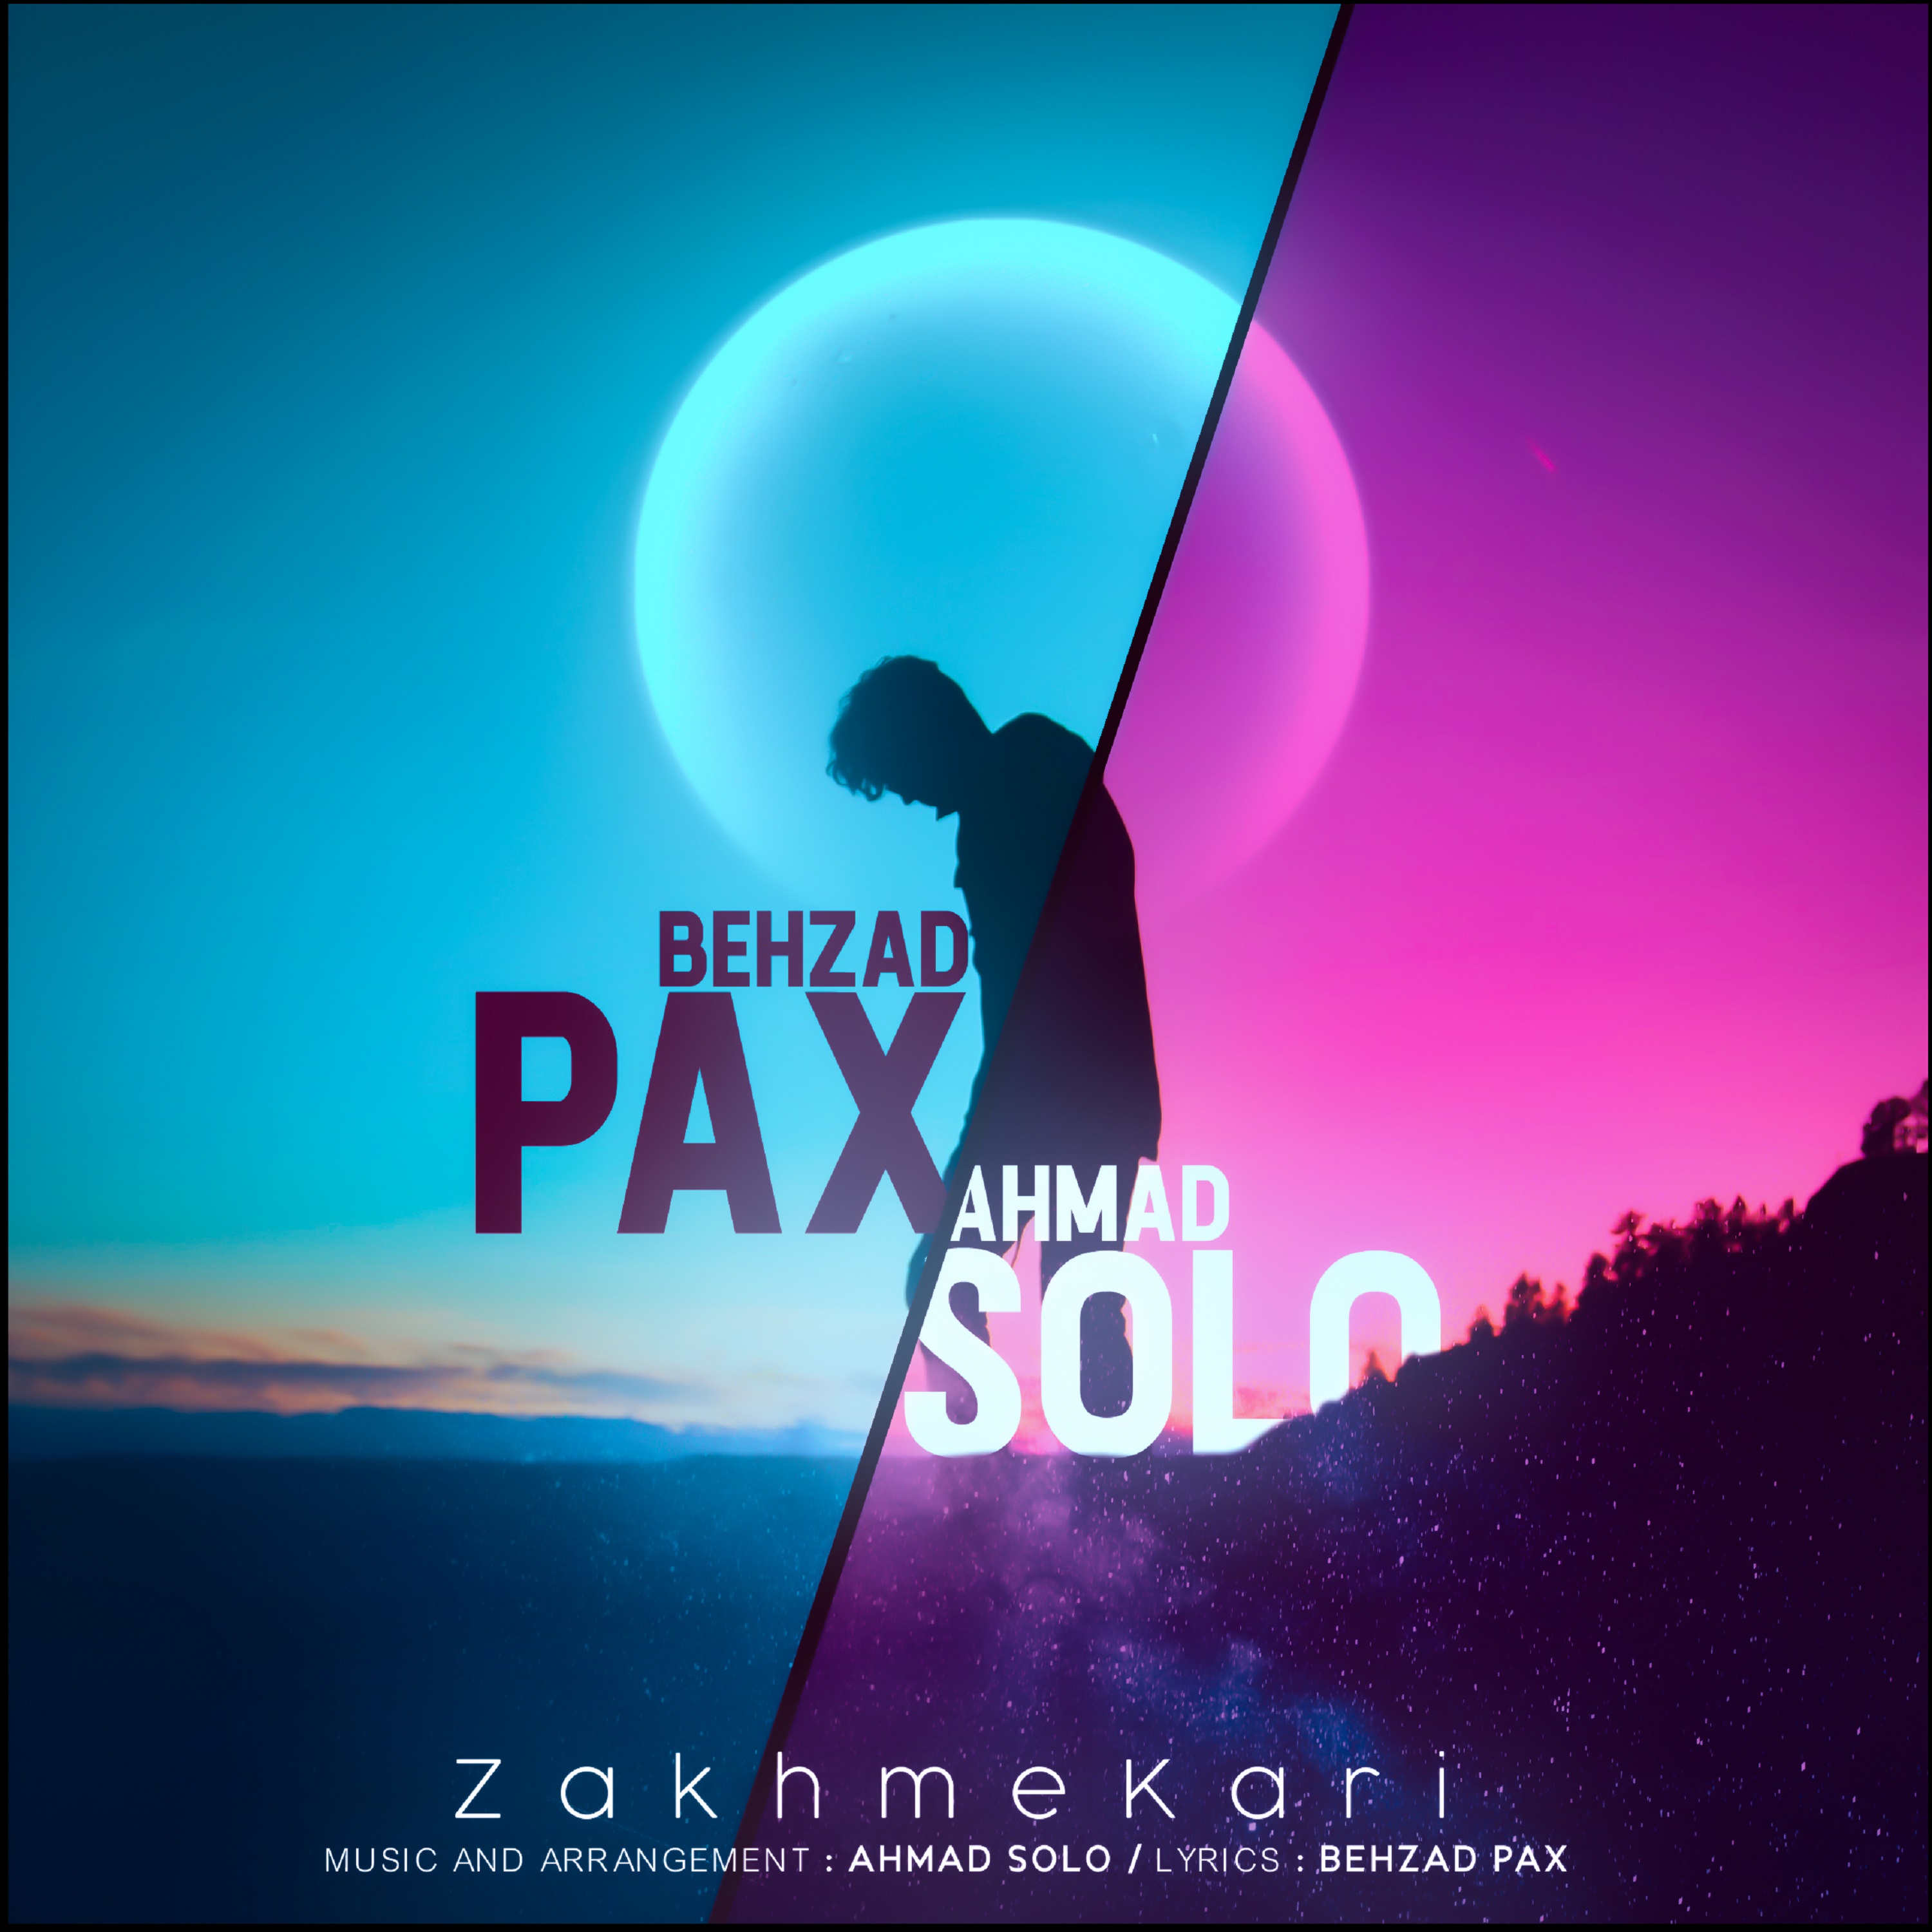  دانلود آهنگ جدید بهزاد پکس و احمد سلو - خود فروش | Download New Music By Behzad Pax & Ahmad Solo - Khod Furoosh